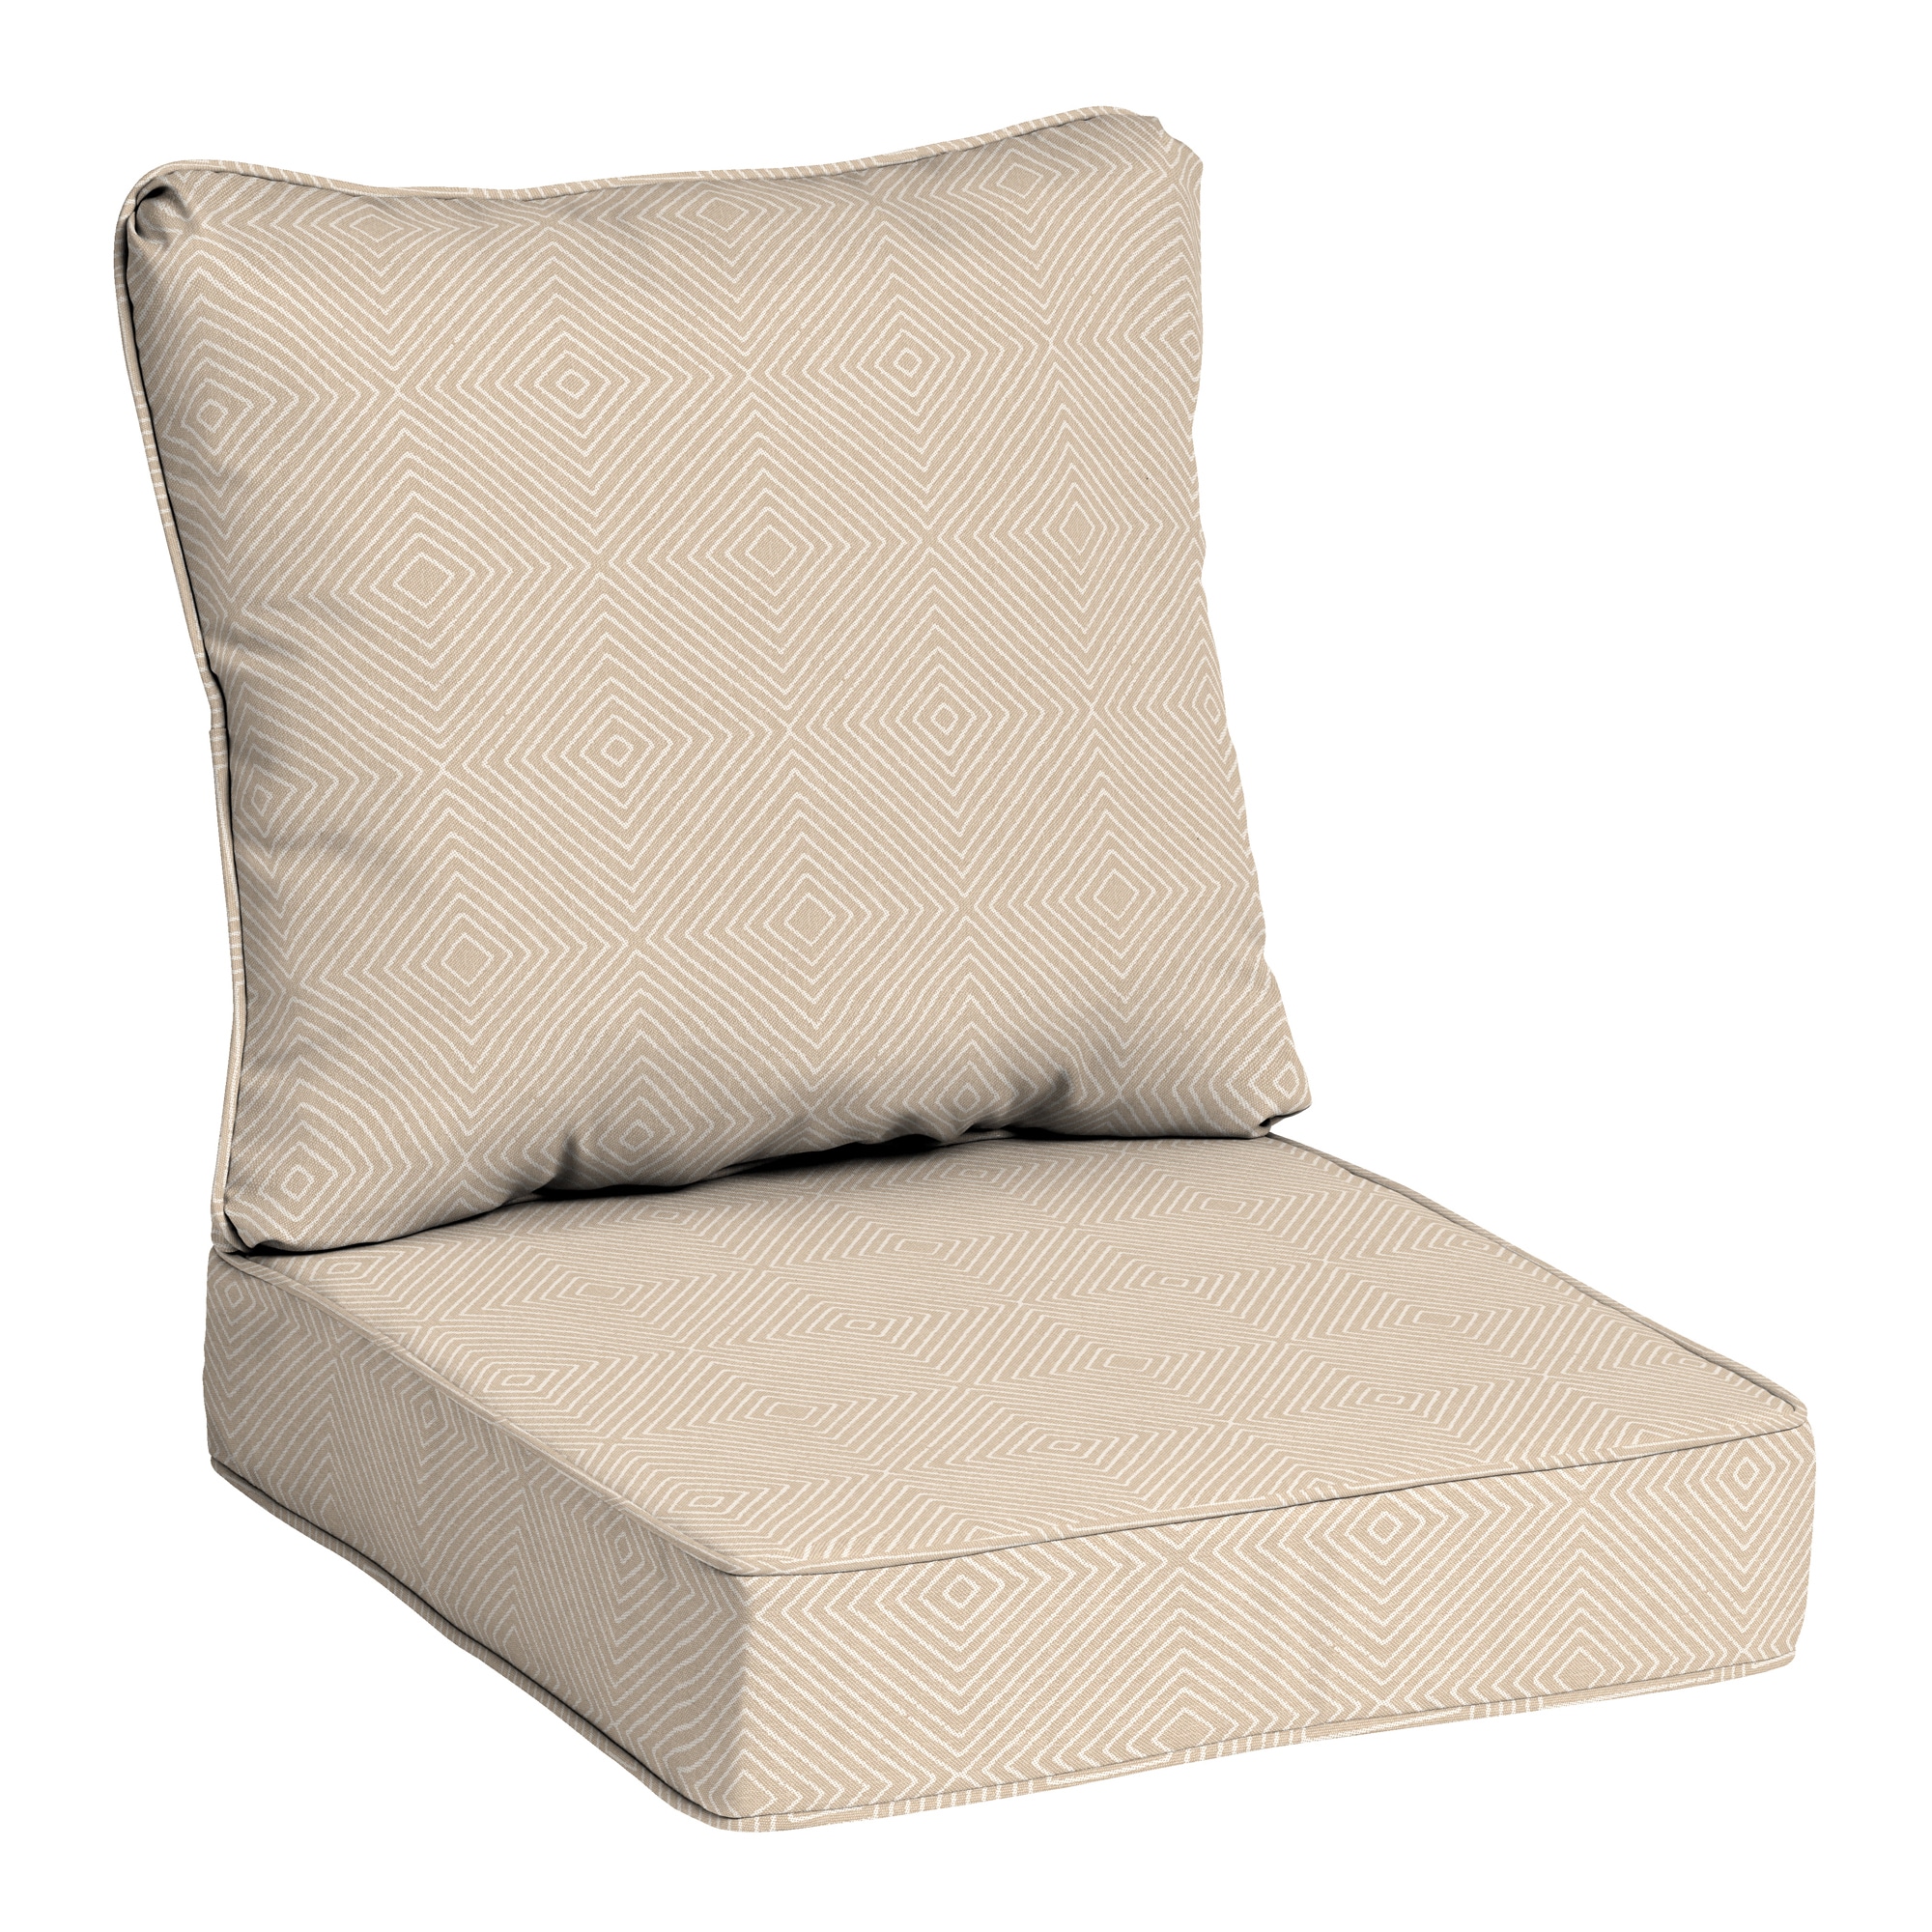 60 Inch Long Patio Cushions & Pillows at